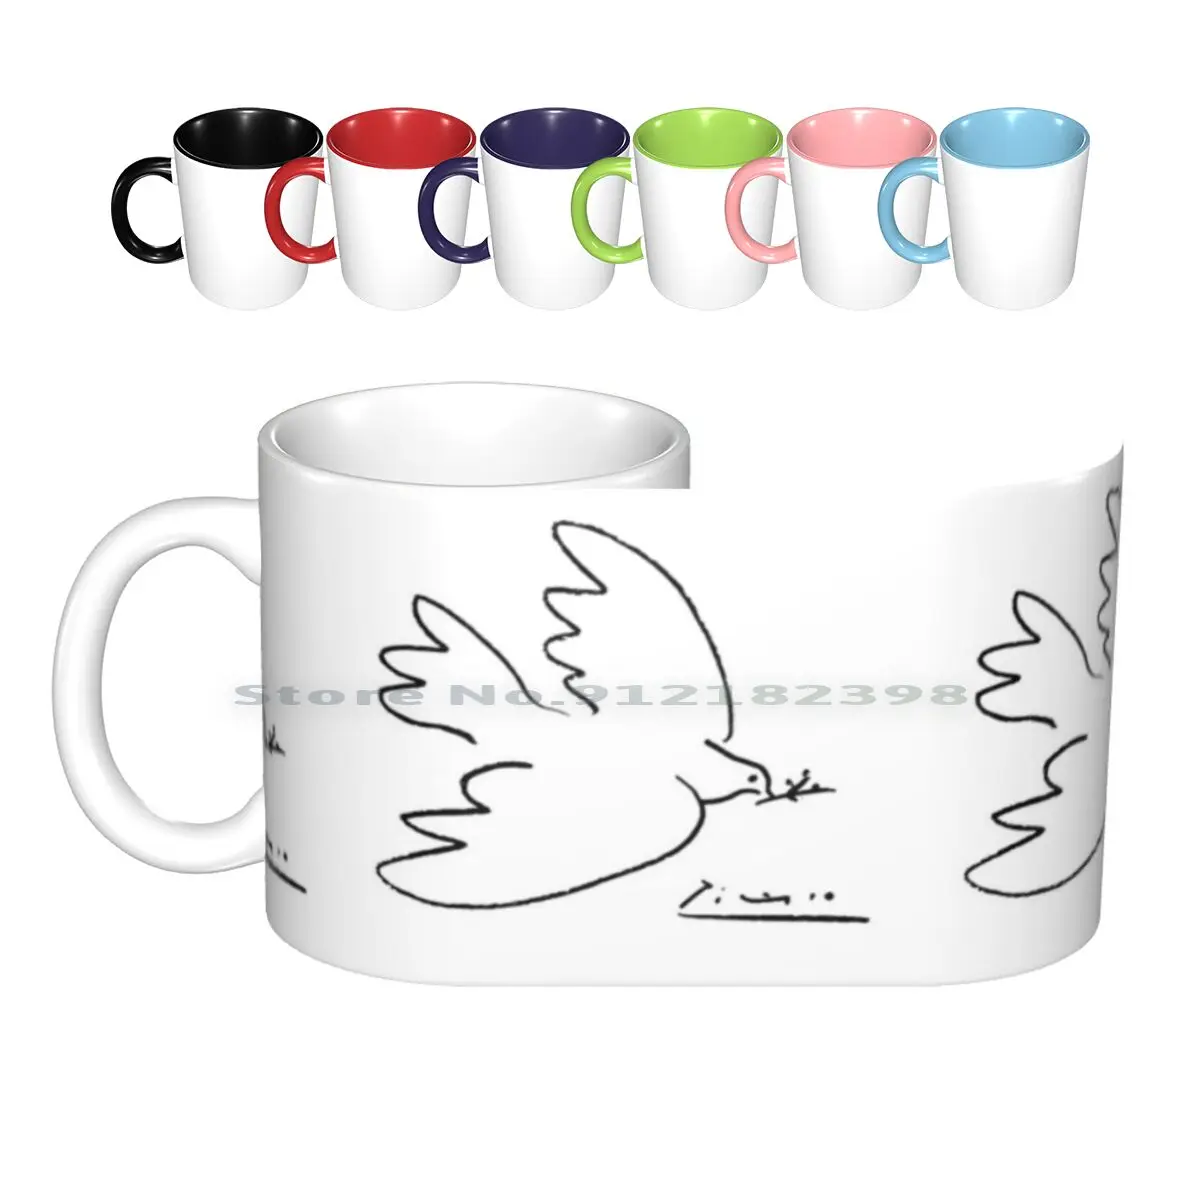 

Керамические кружки с голубьями Пикассо, чашки для кофе, кружка для молока, чая, кружка Пикассо, Пабло, Эскобар, Пабло, Пикассо, голубь, мир, ми...